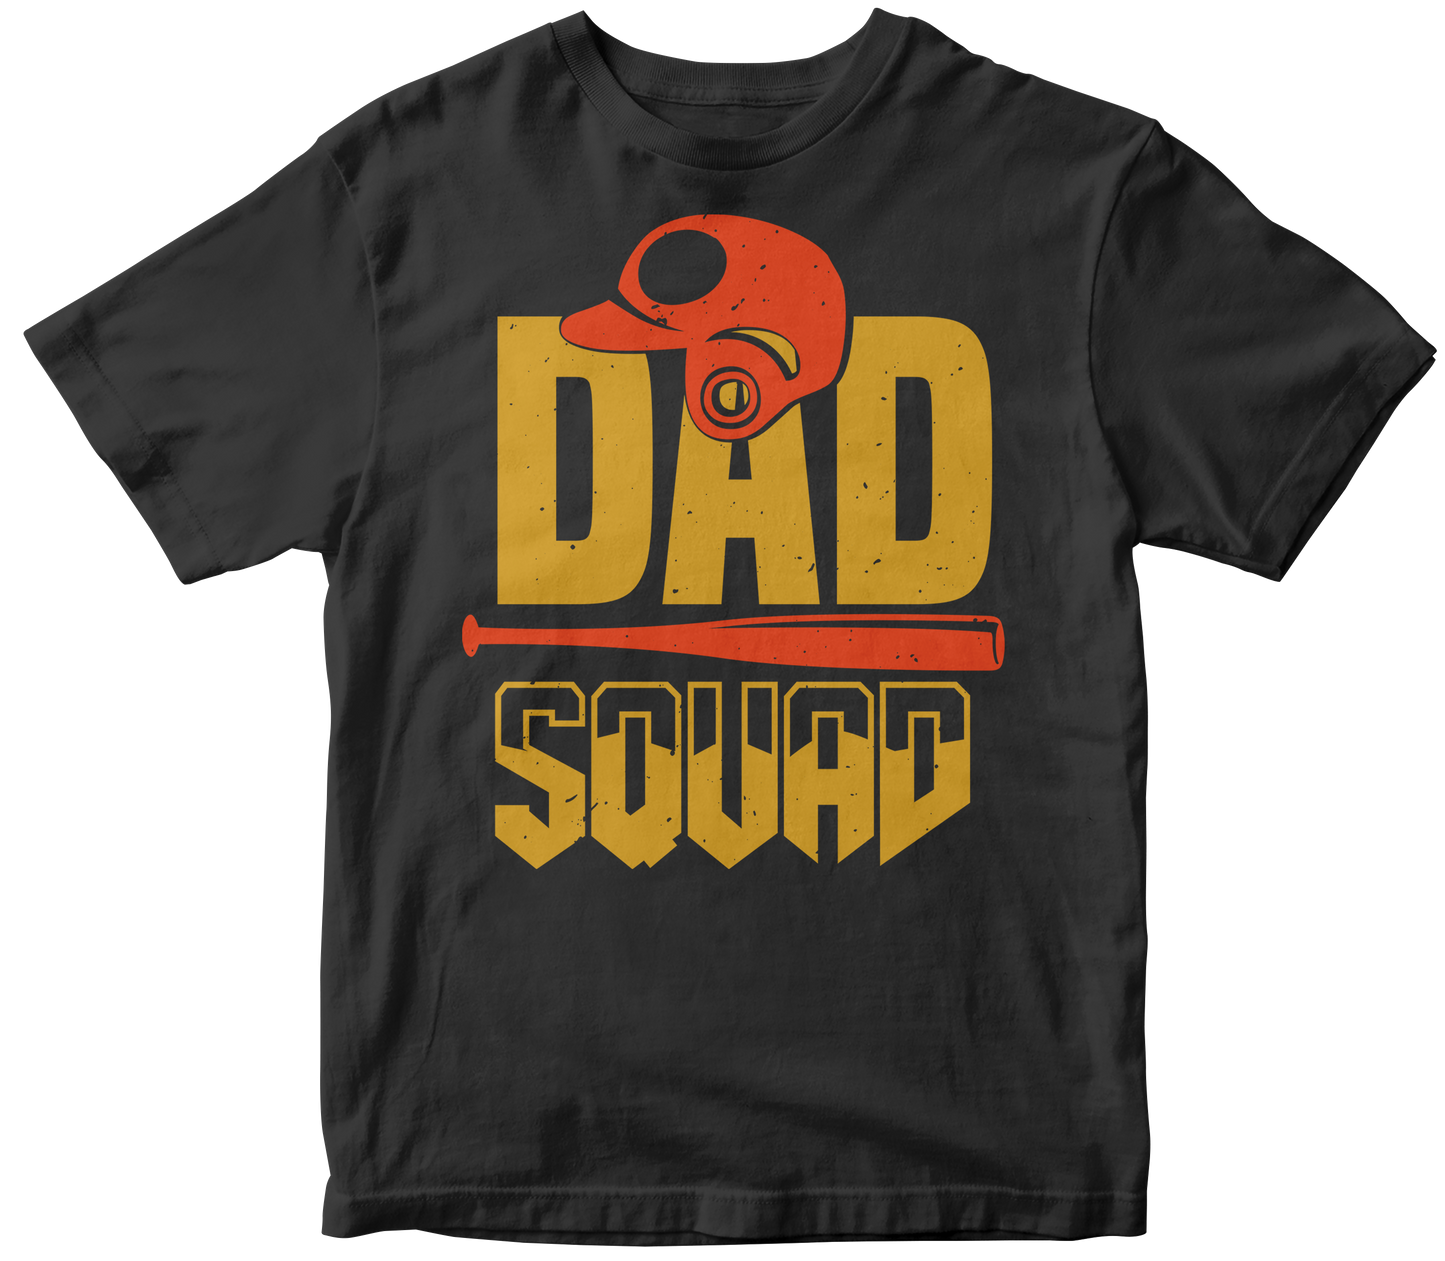 Dad squad